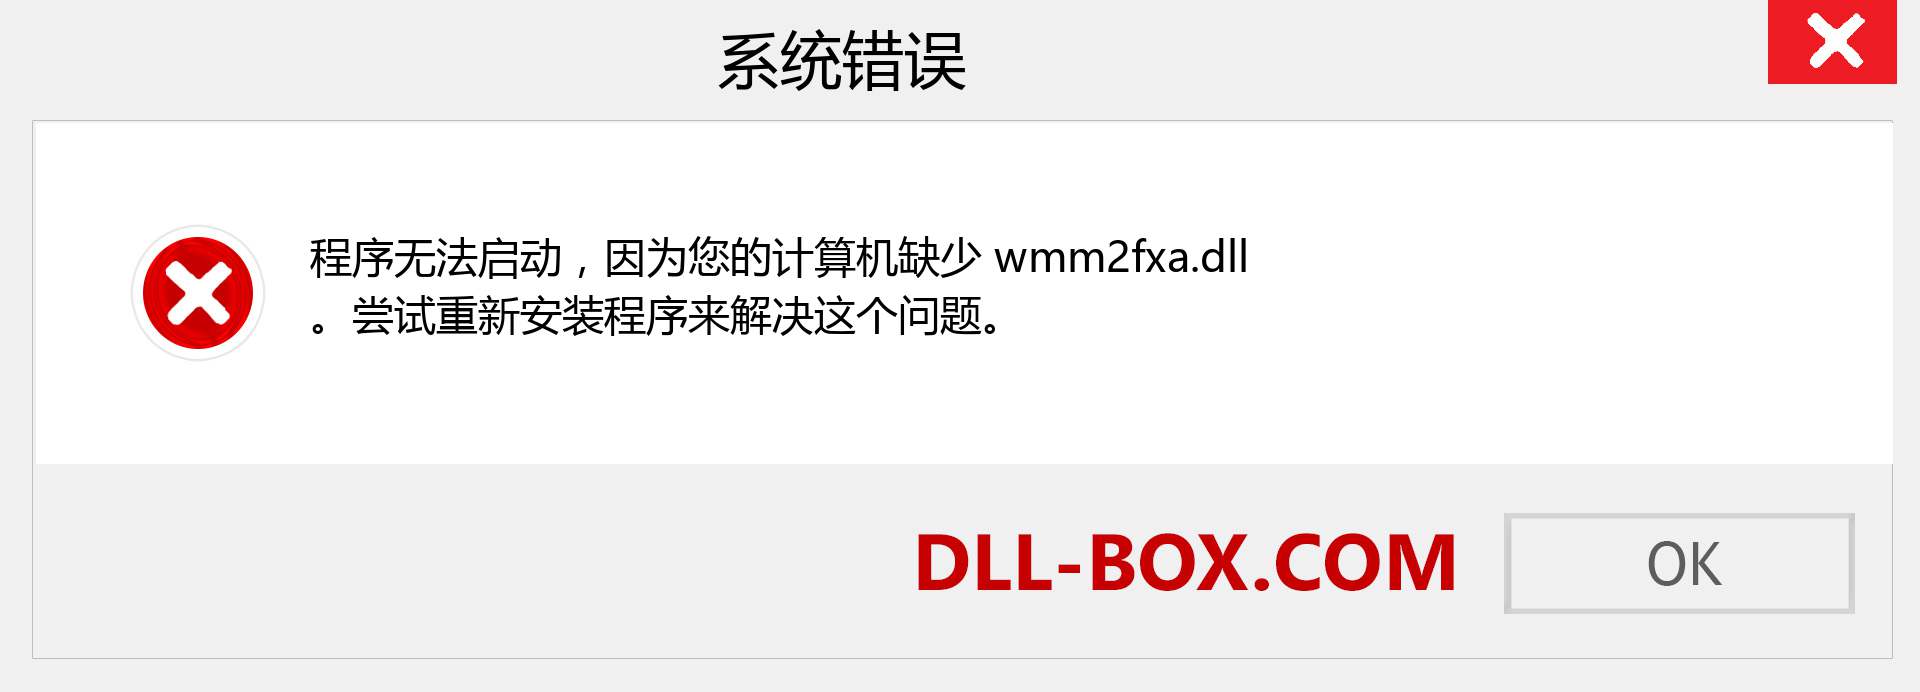 wmm2fxa.dll 文件丢失？。 适用于 Windows 7、8、10 的下载 - 修复 Windows、照片、图像上的 wmm2fxa dll 丢失错误